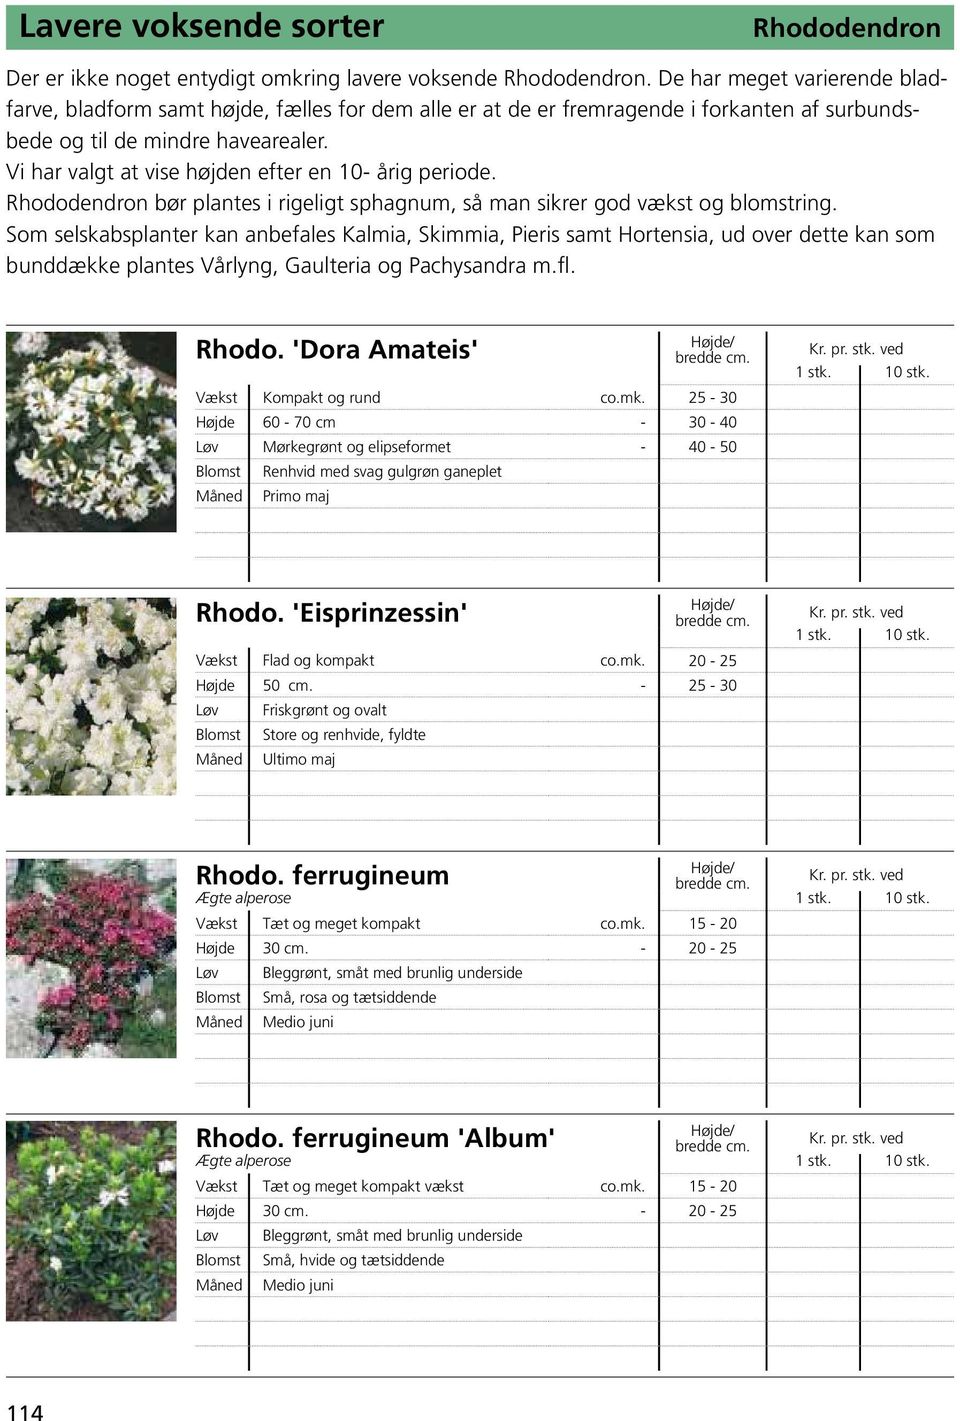 Vi har valgt at vise højden efter en 10- årig periode. Rhododendron bør plantes i rigeligt sphagnum, så man sikrer god vækst og blomstring.